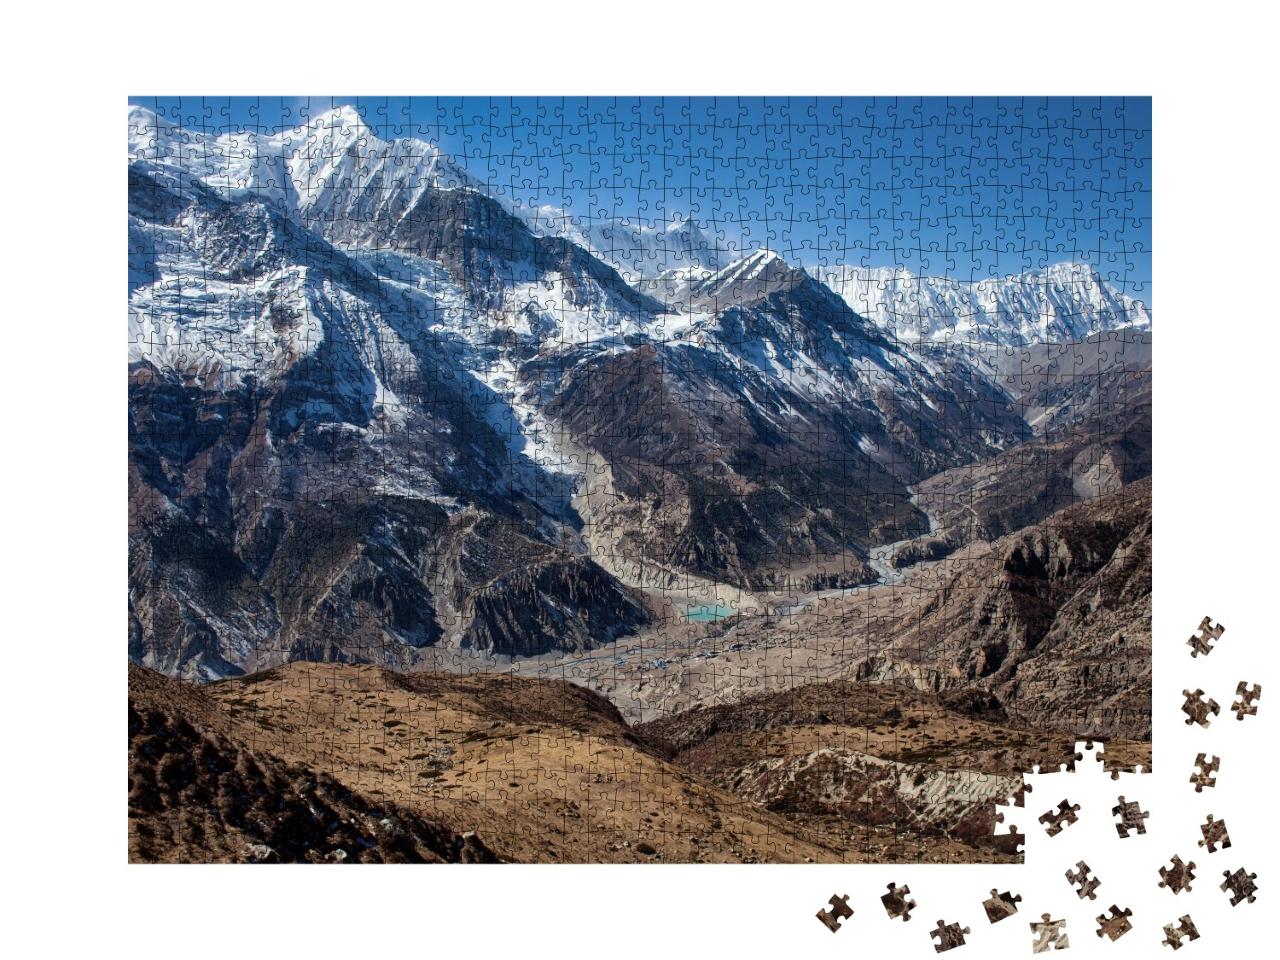 Puzzle de 1000 pièces « Circuit de l'Annapurna, chemin du lac de glace »